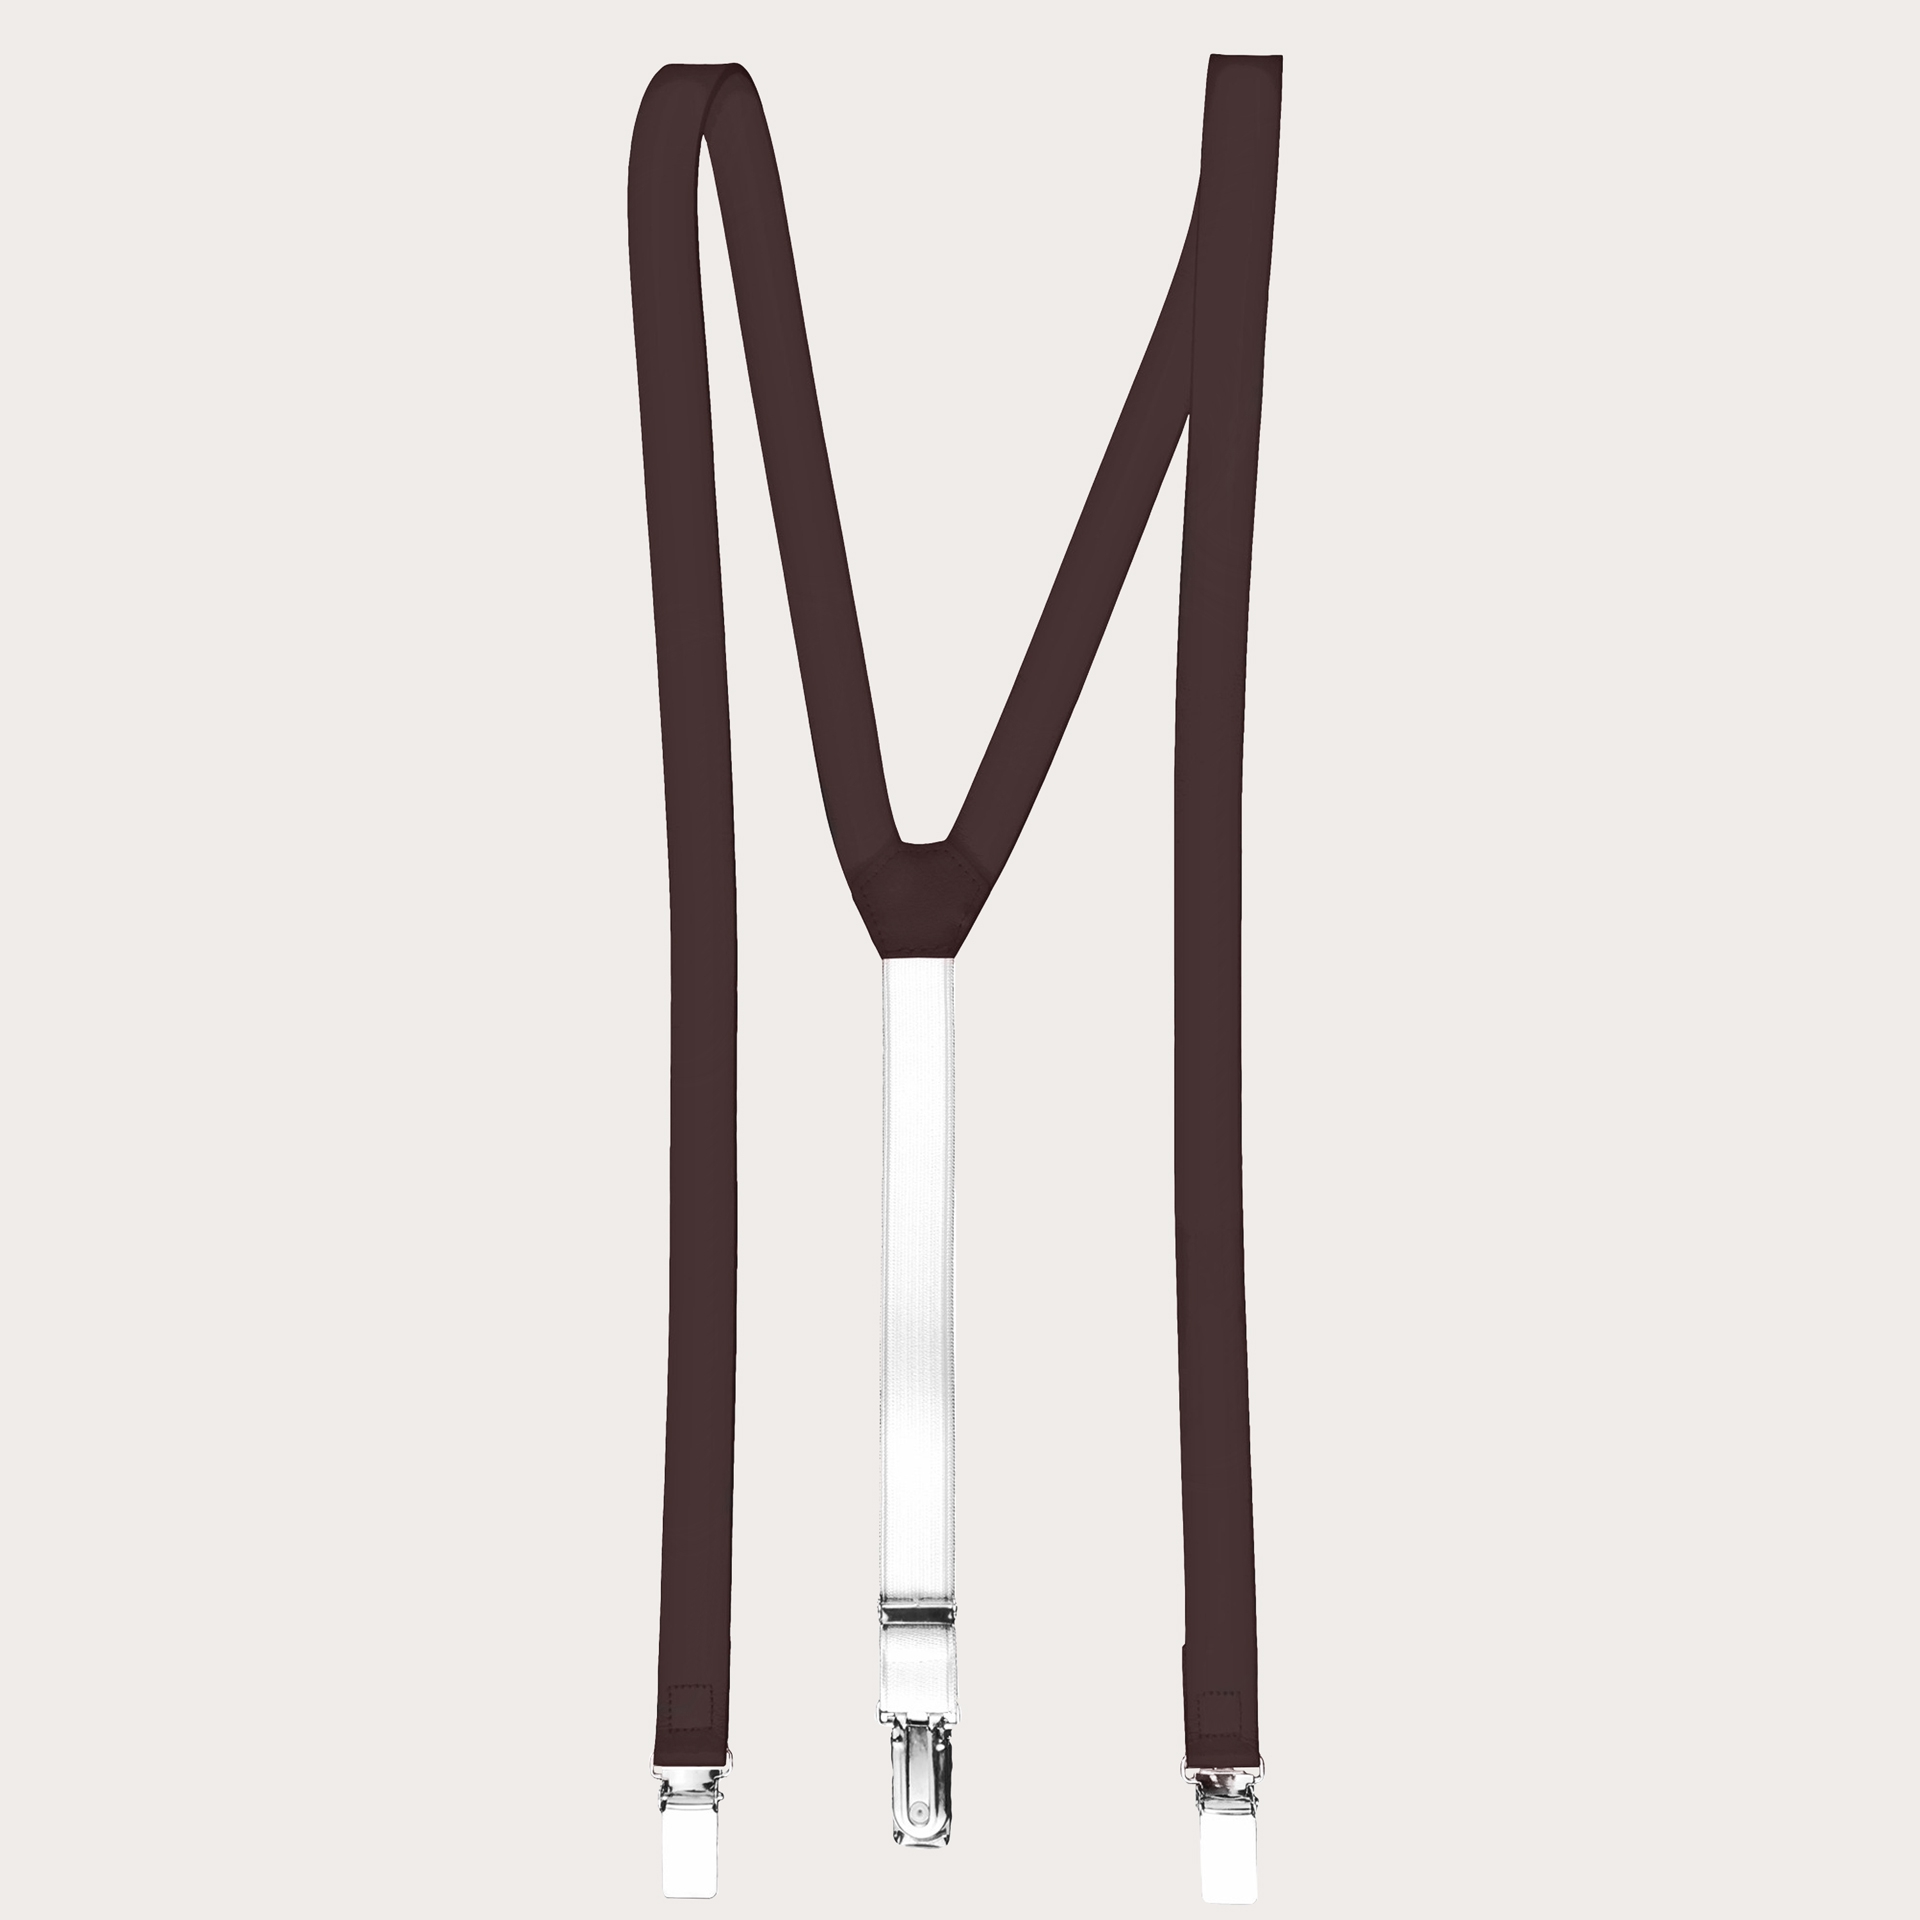 BRUCLE Y-shape leather suspenders, dark brown